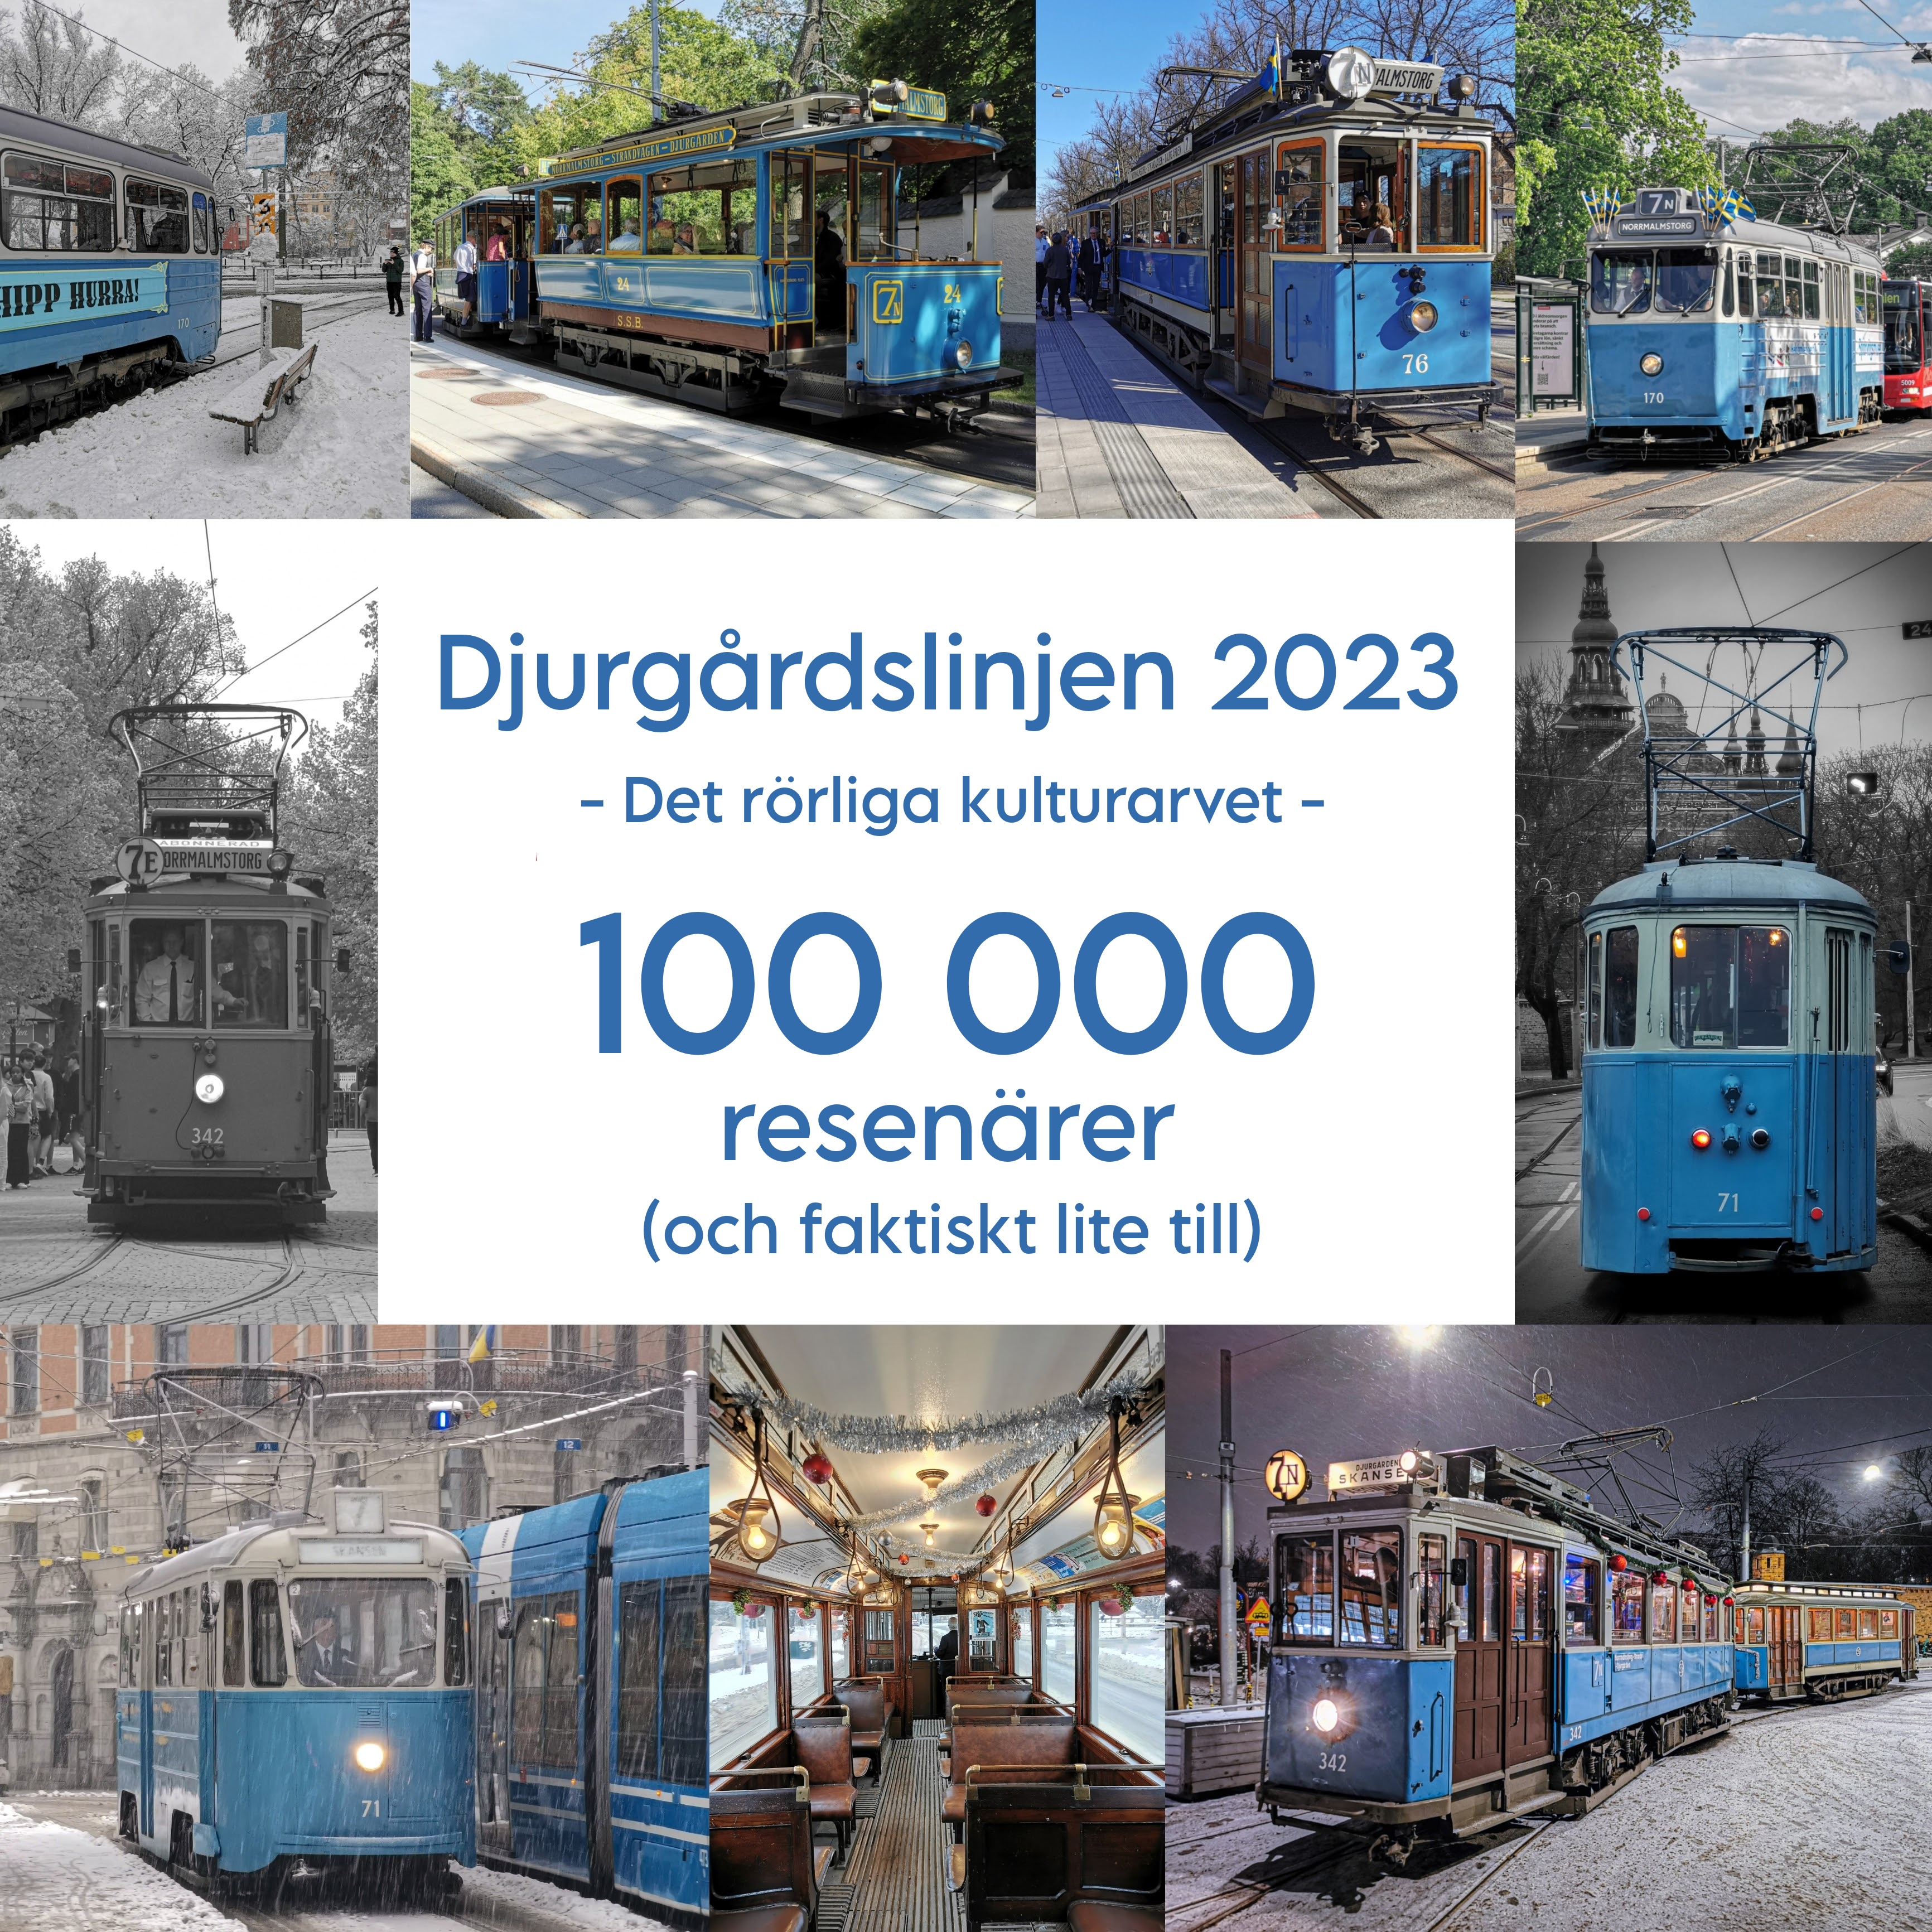 Djurgården, Spårväg City, SL, Gröna Lund, Skansen, Djurgårdslinjen, Spårvagn, Veteranspårvagn, Svenska Spårvägssällskapet